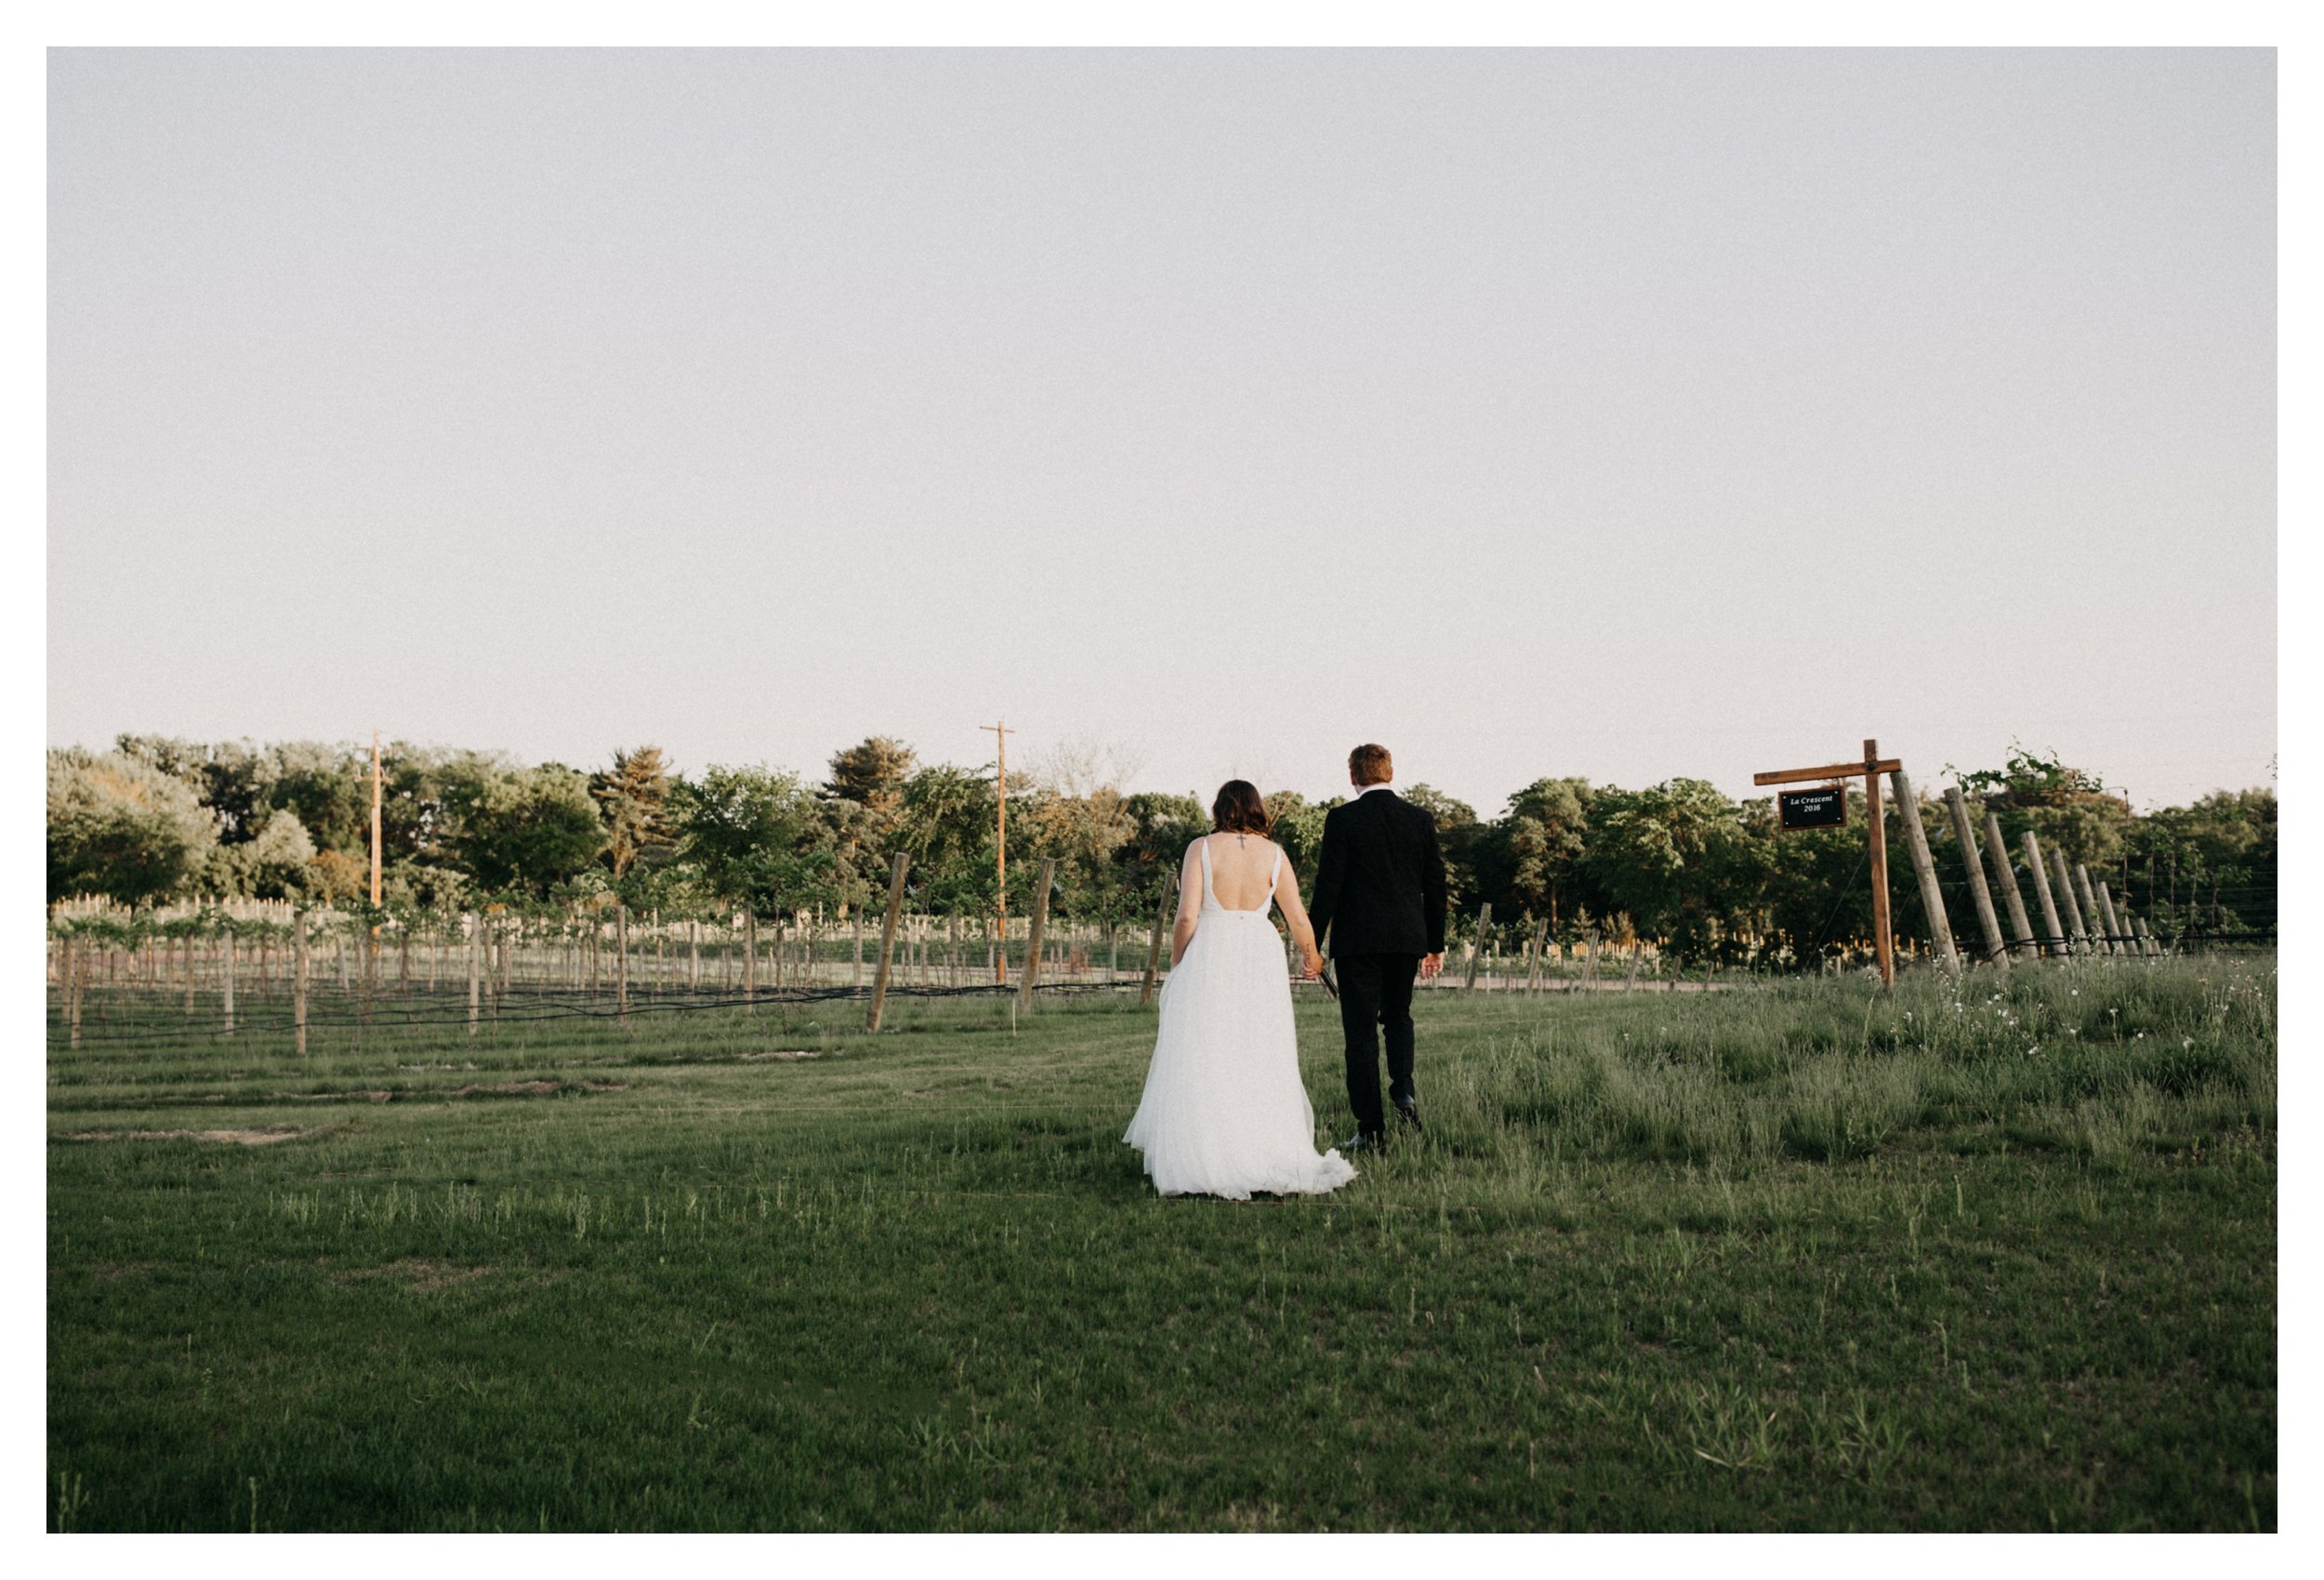 Bride and groom walking in vineyard at 7 Vines winery in Minnesota